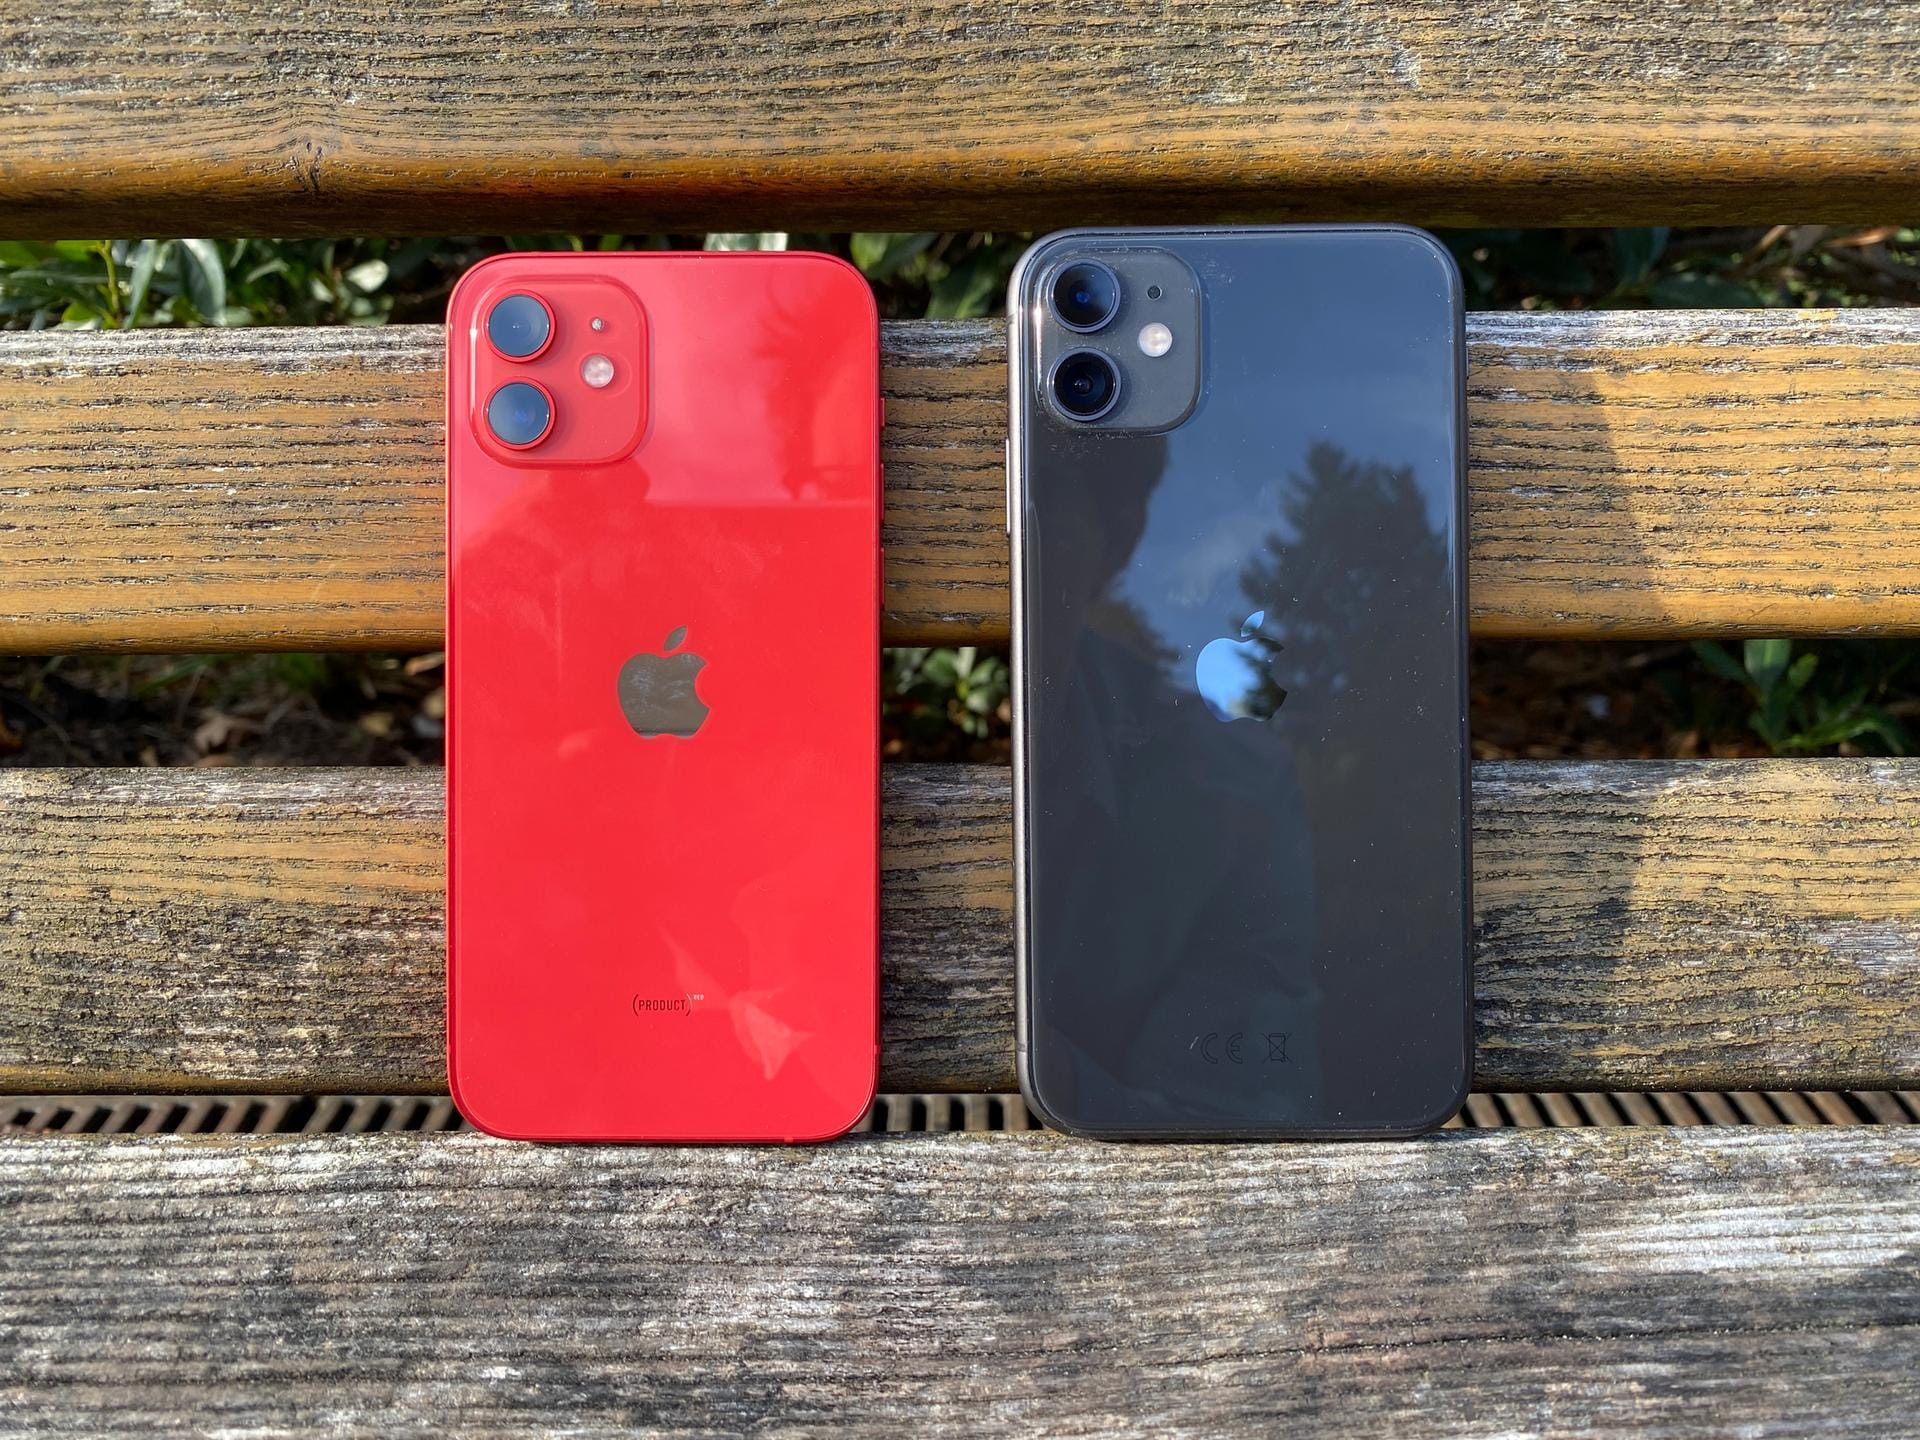 Hier sieht man das iPhone 12 (links) und dessen Vorgänger, das iPhone 11, nebeneinander.